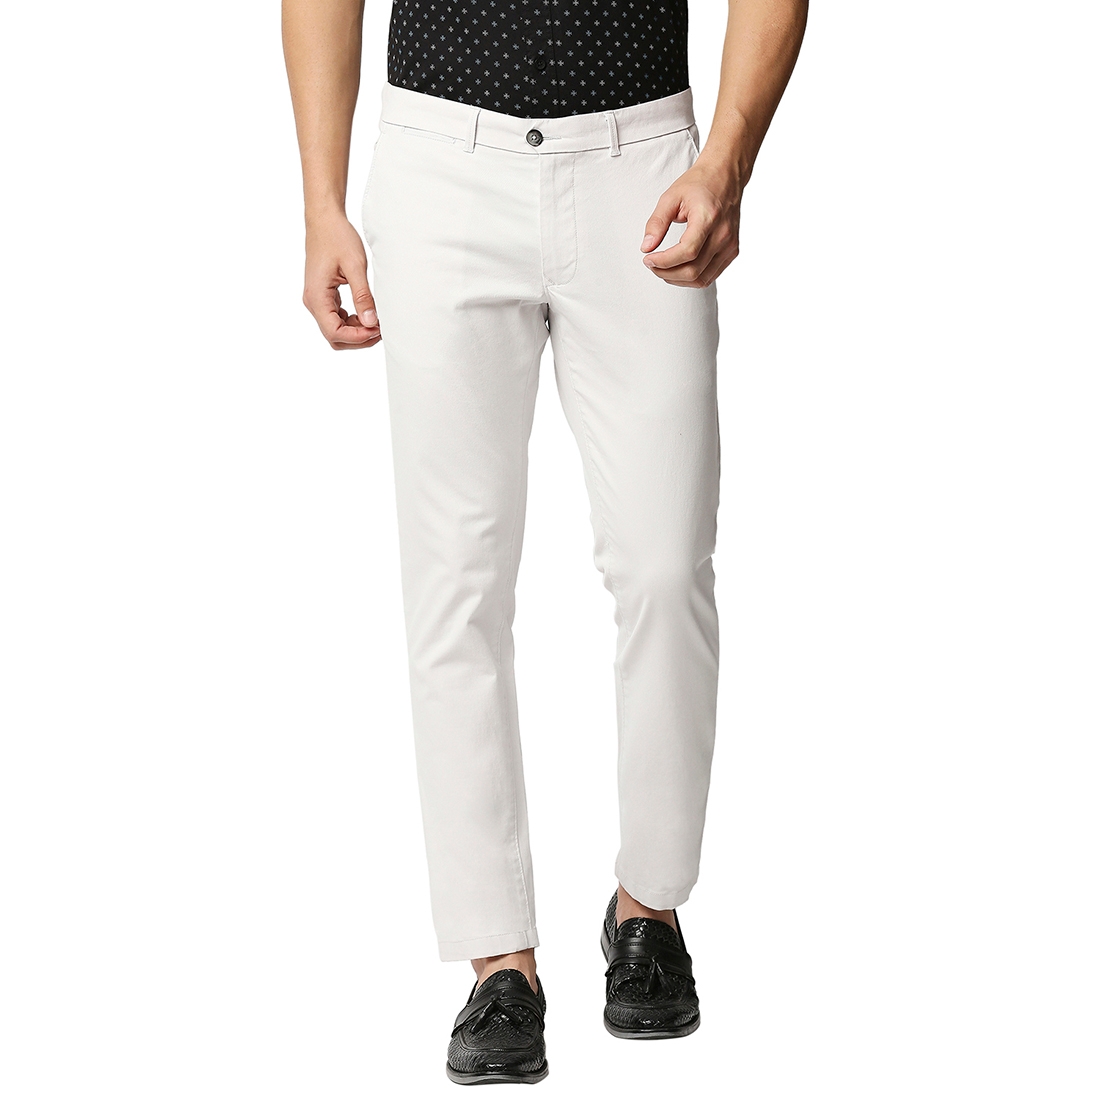 Basics | Men's White Cotton Blend Solid Trouser 0